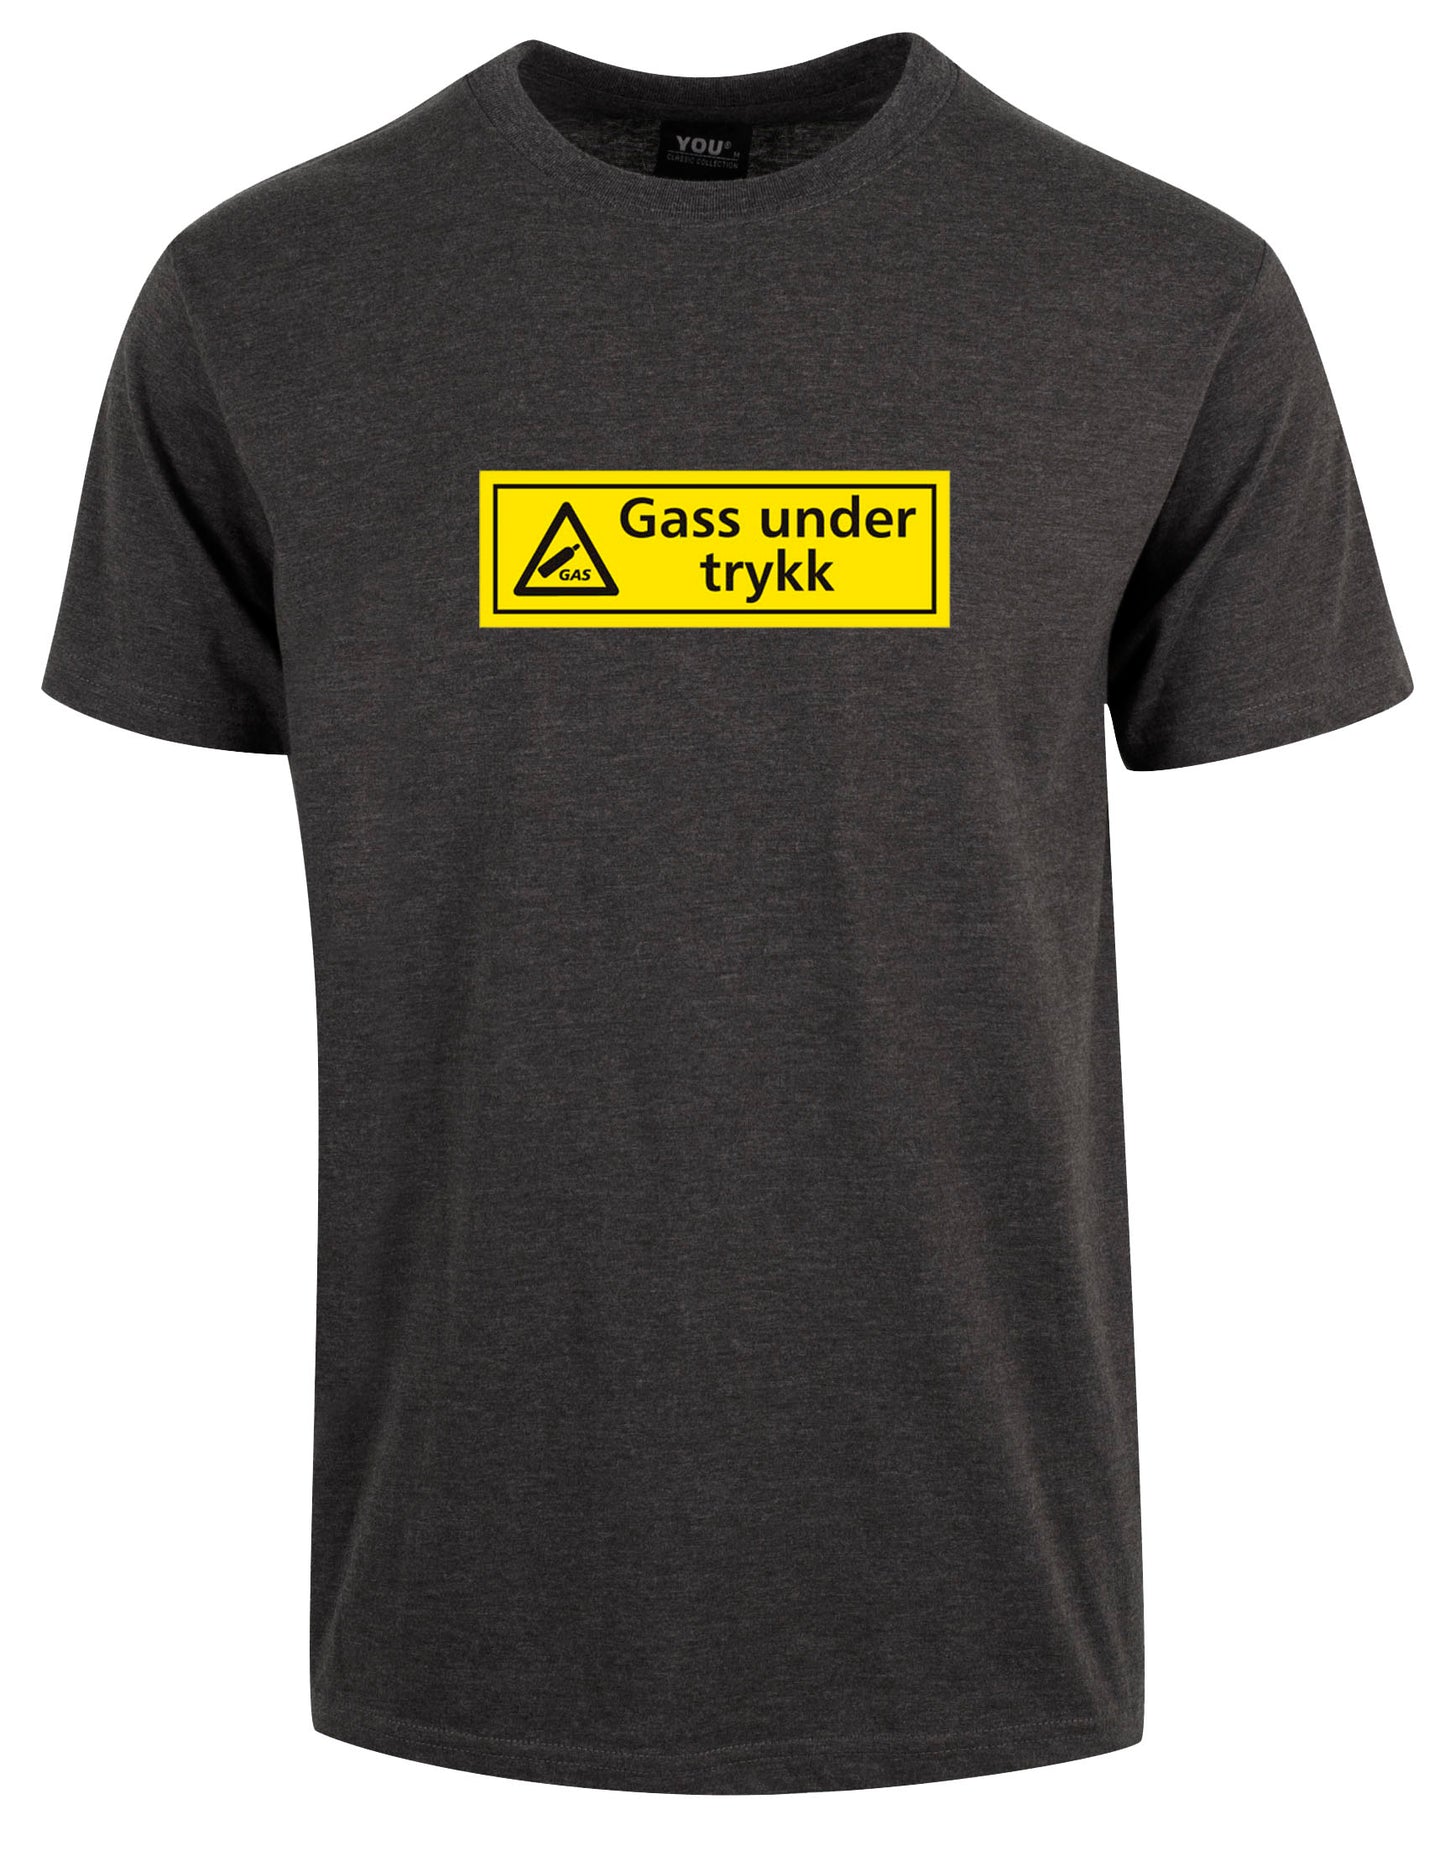 Gass under trykk t-skjorte